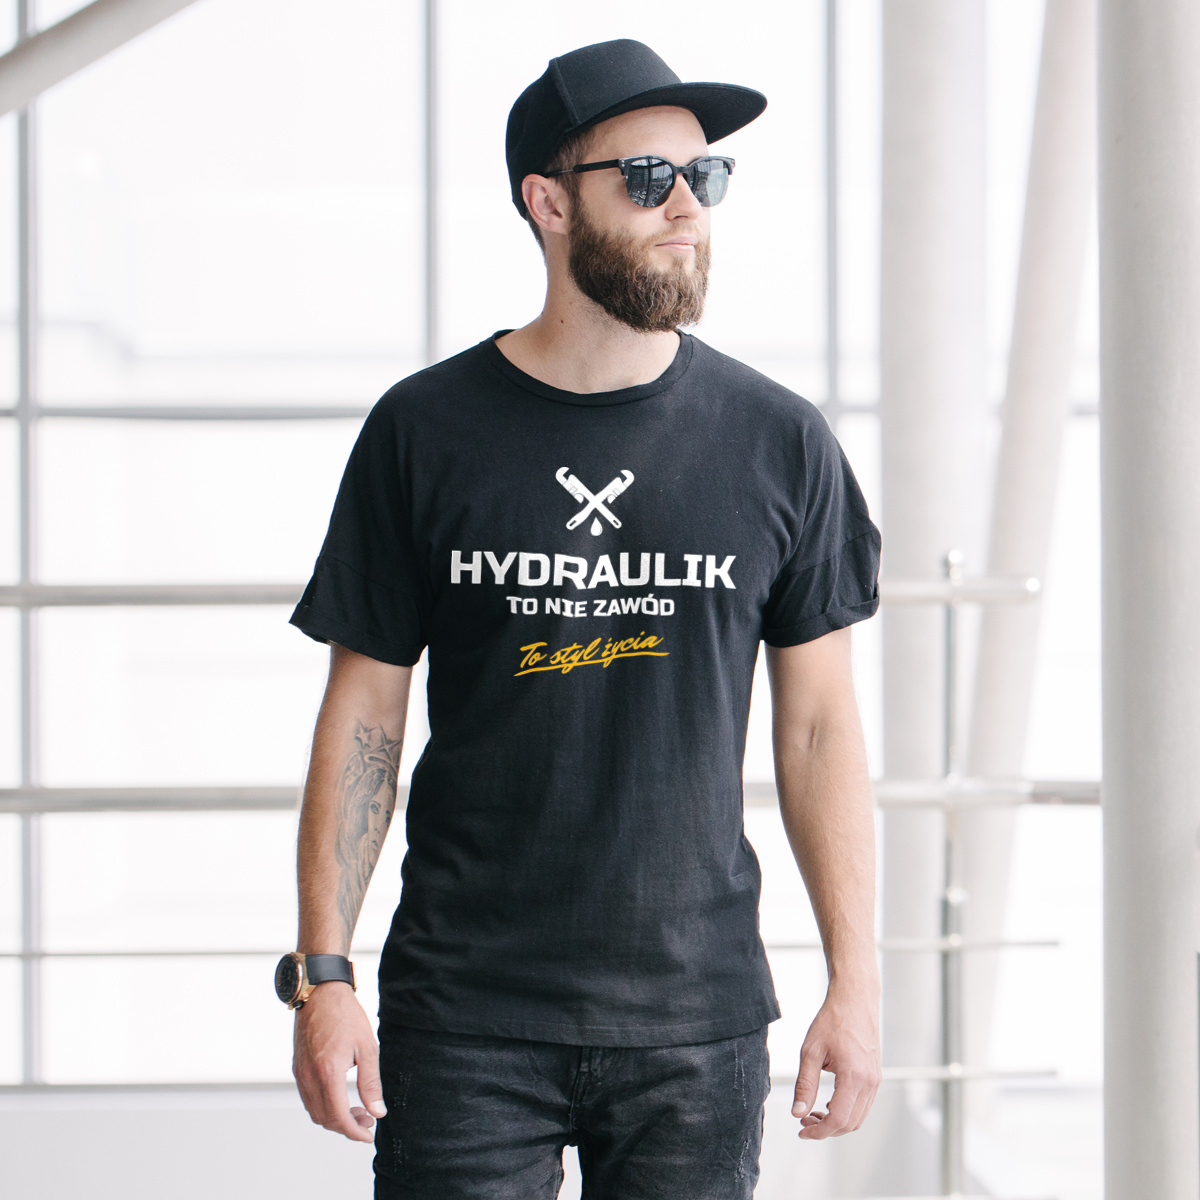 Hydraulik To Nie Zawód - To Styl Życia - Męska Koszulka Czarna